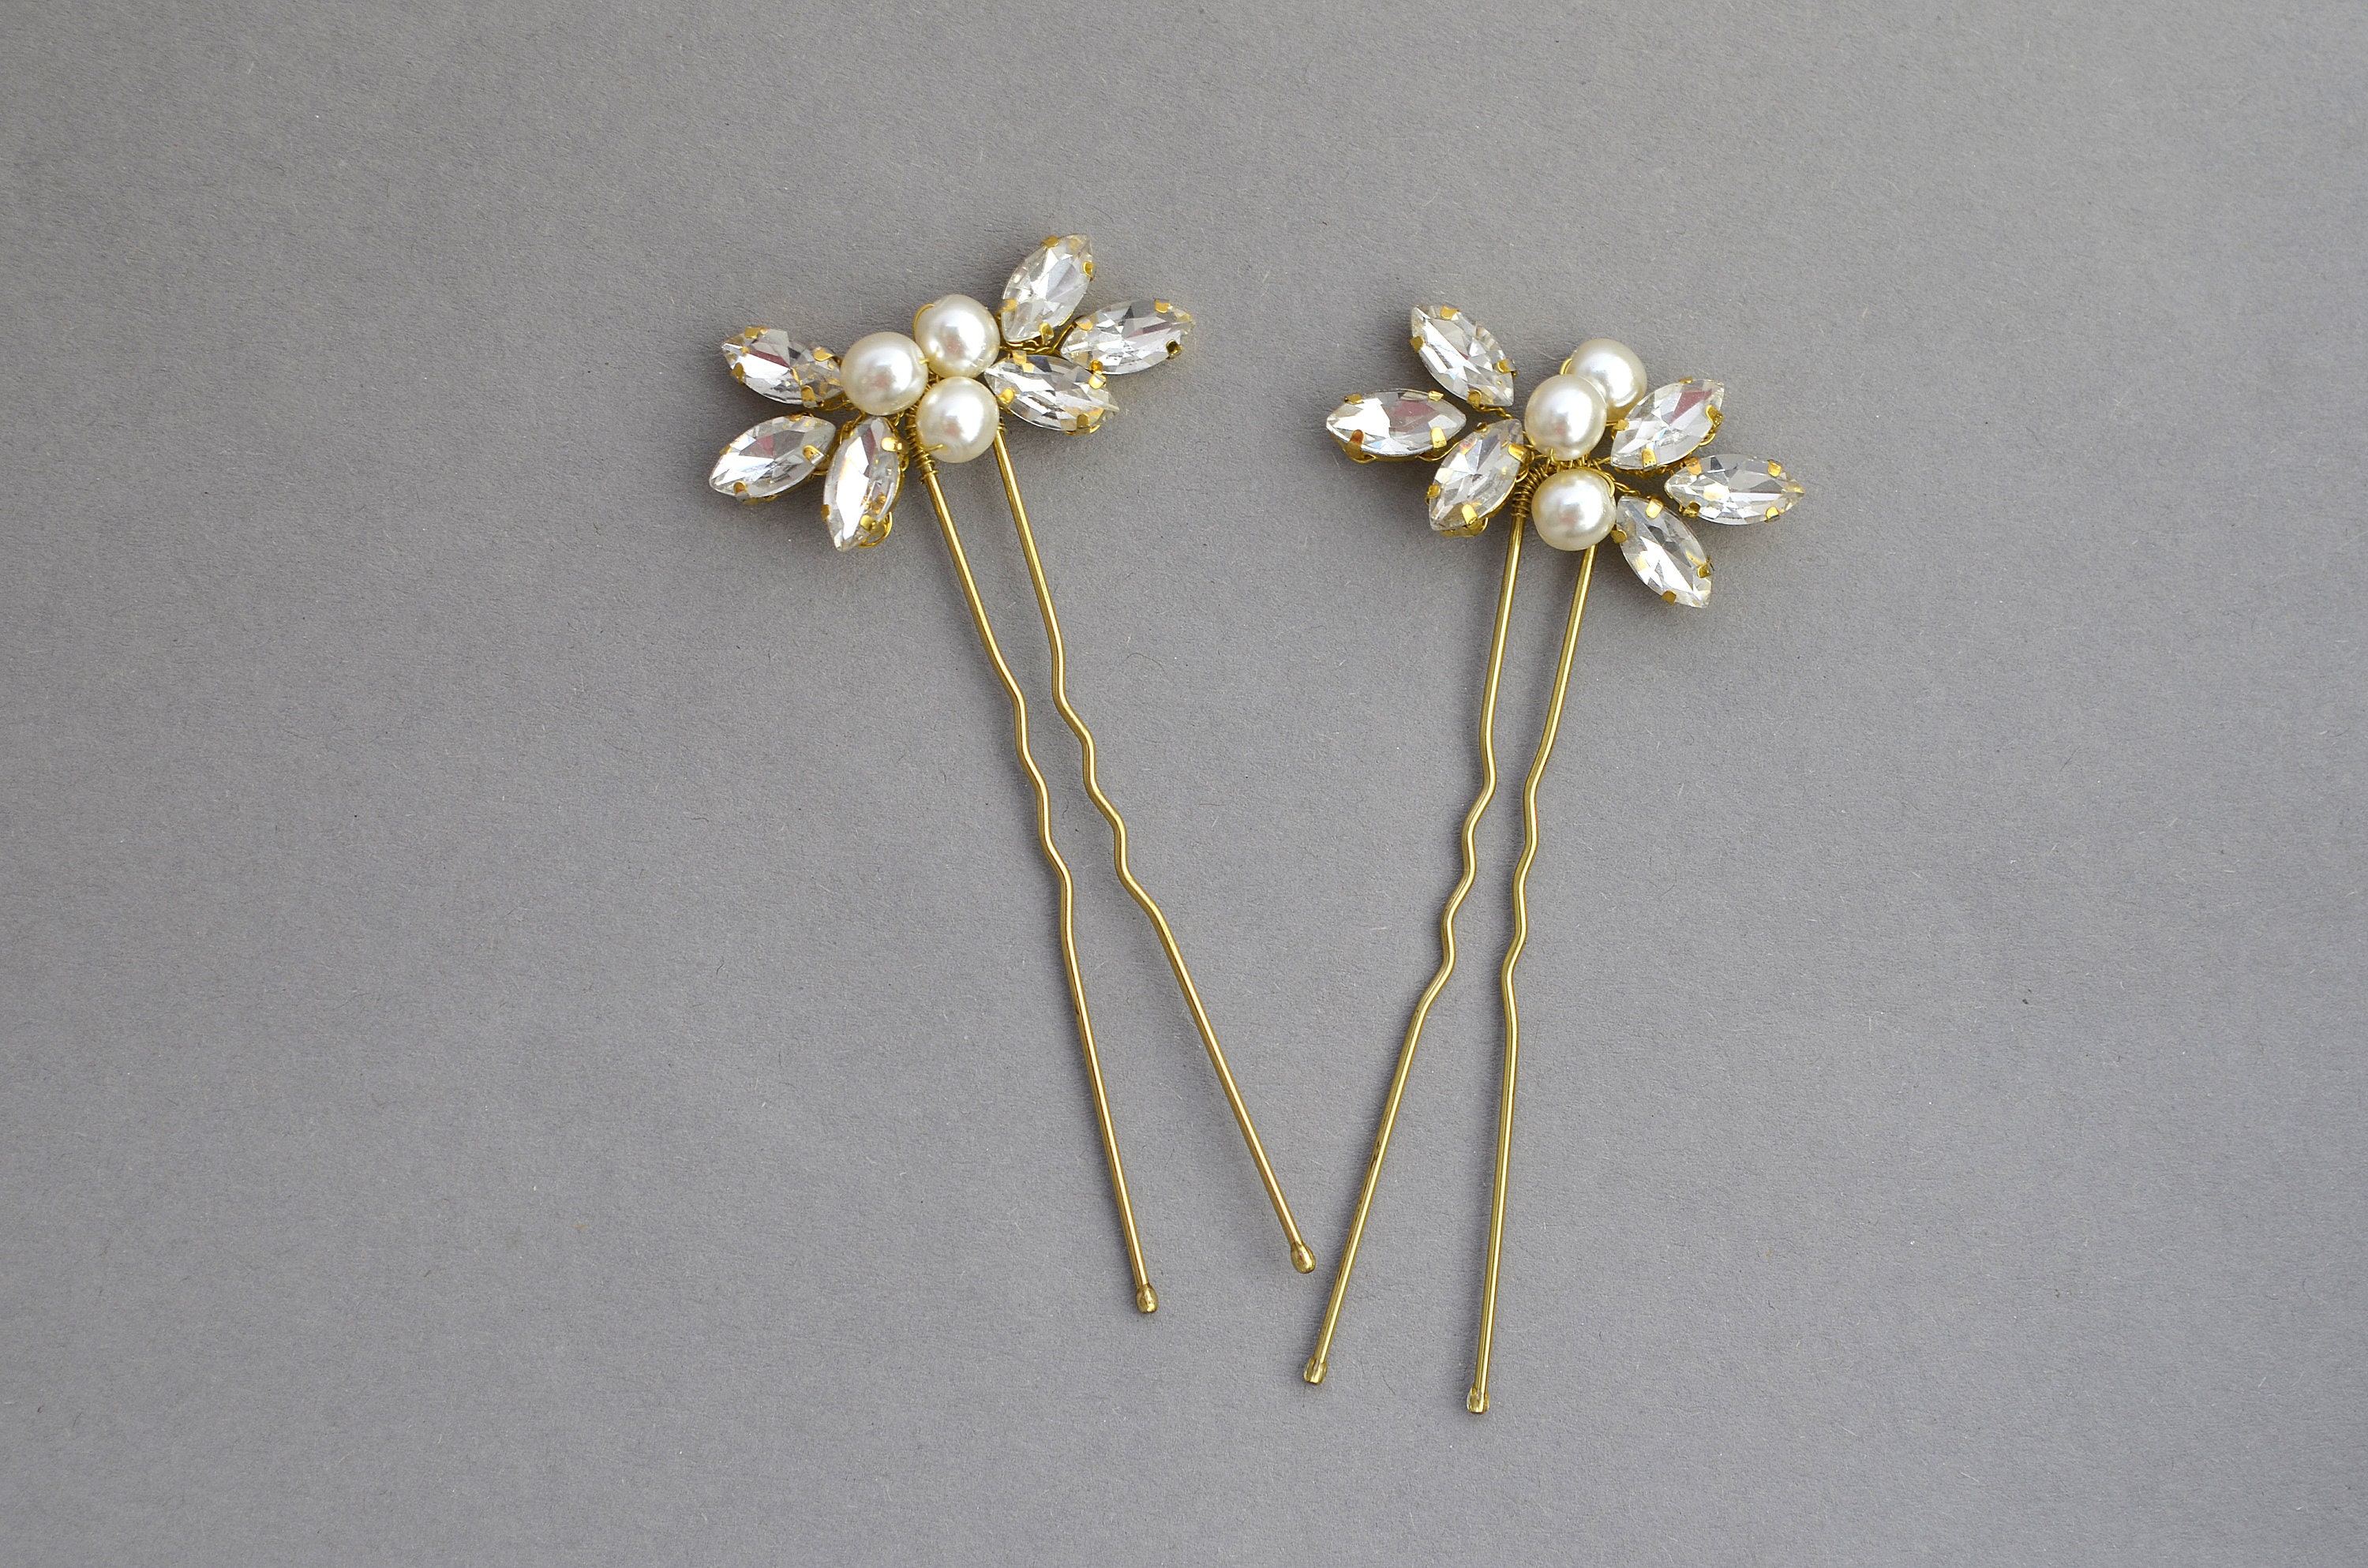 Pearls crystals bridesmaid gold rhinestone hair pins for | Etsy